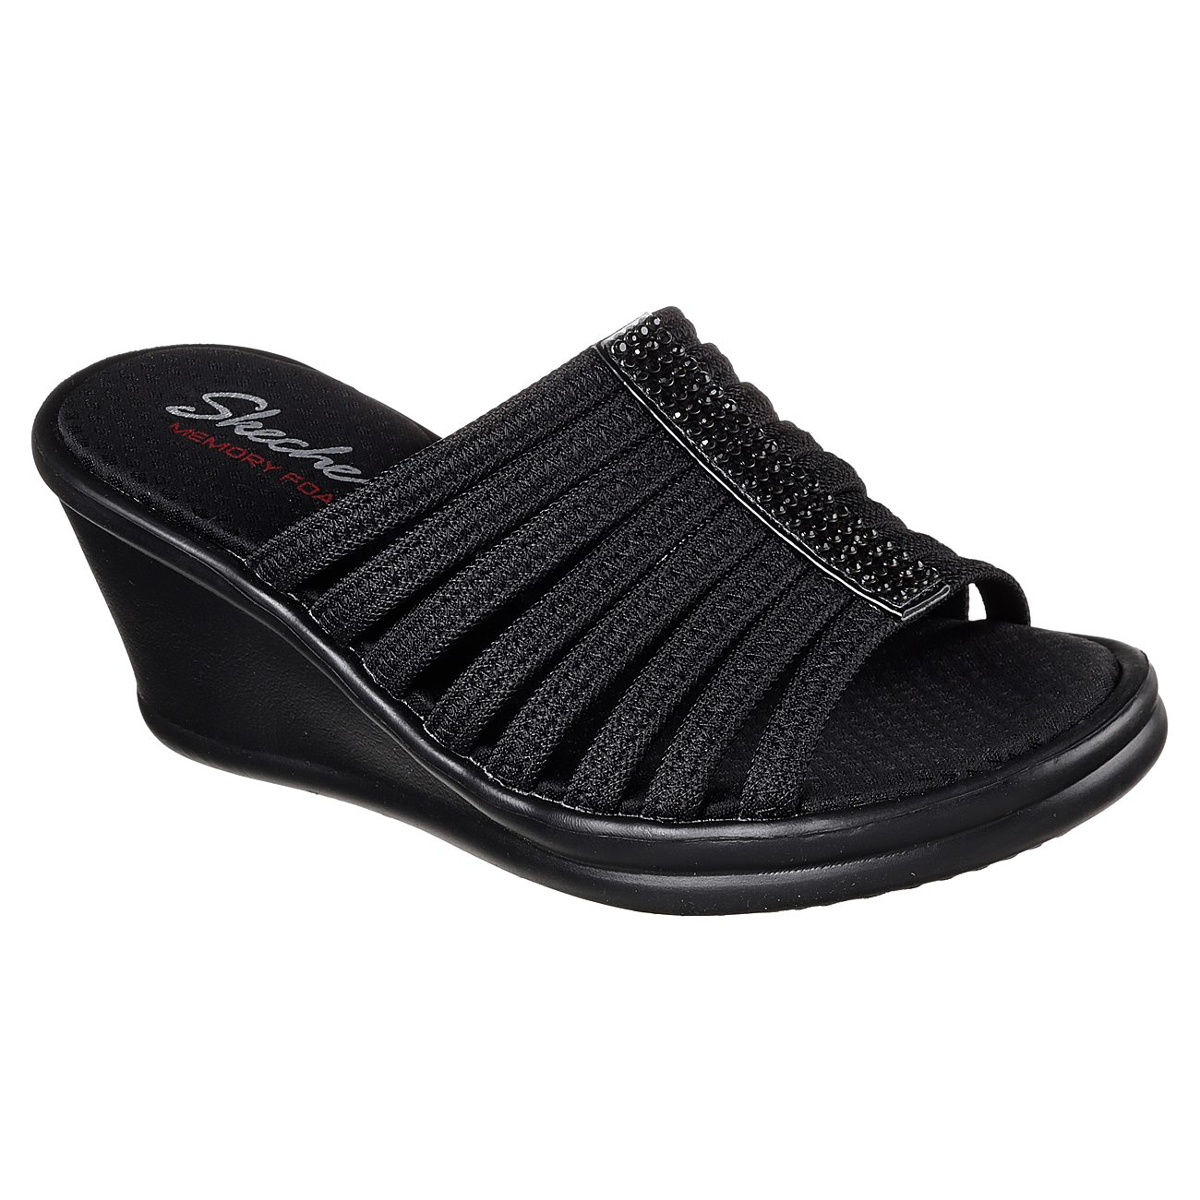 Skechers Women's Rumblers -  Hotshot Sandals - Black, 10